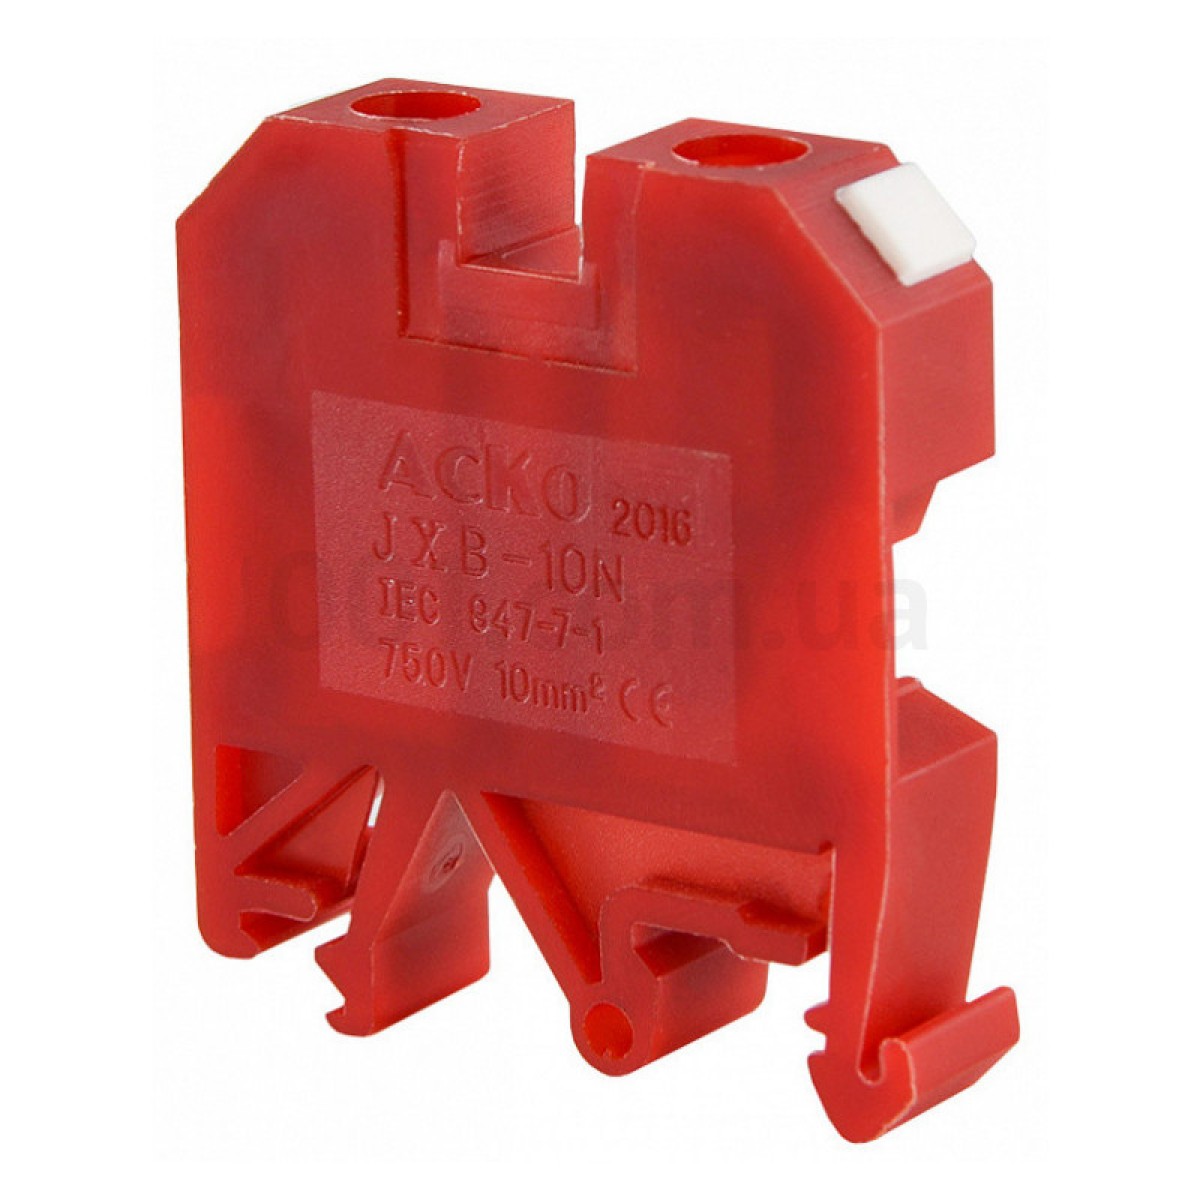 Винтовой контактный зажим JXB 10/35 на DIN-рейку красный, АСКО-УКРЕМ 256_256.jpg